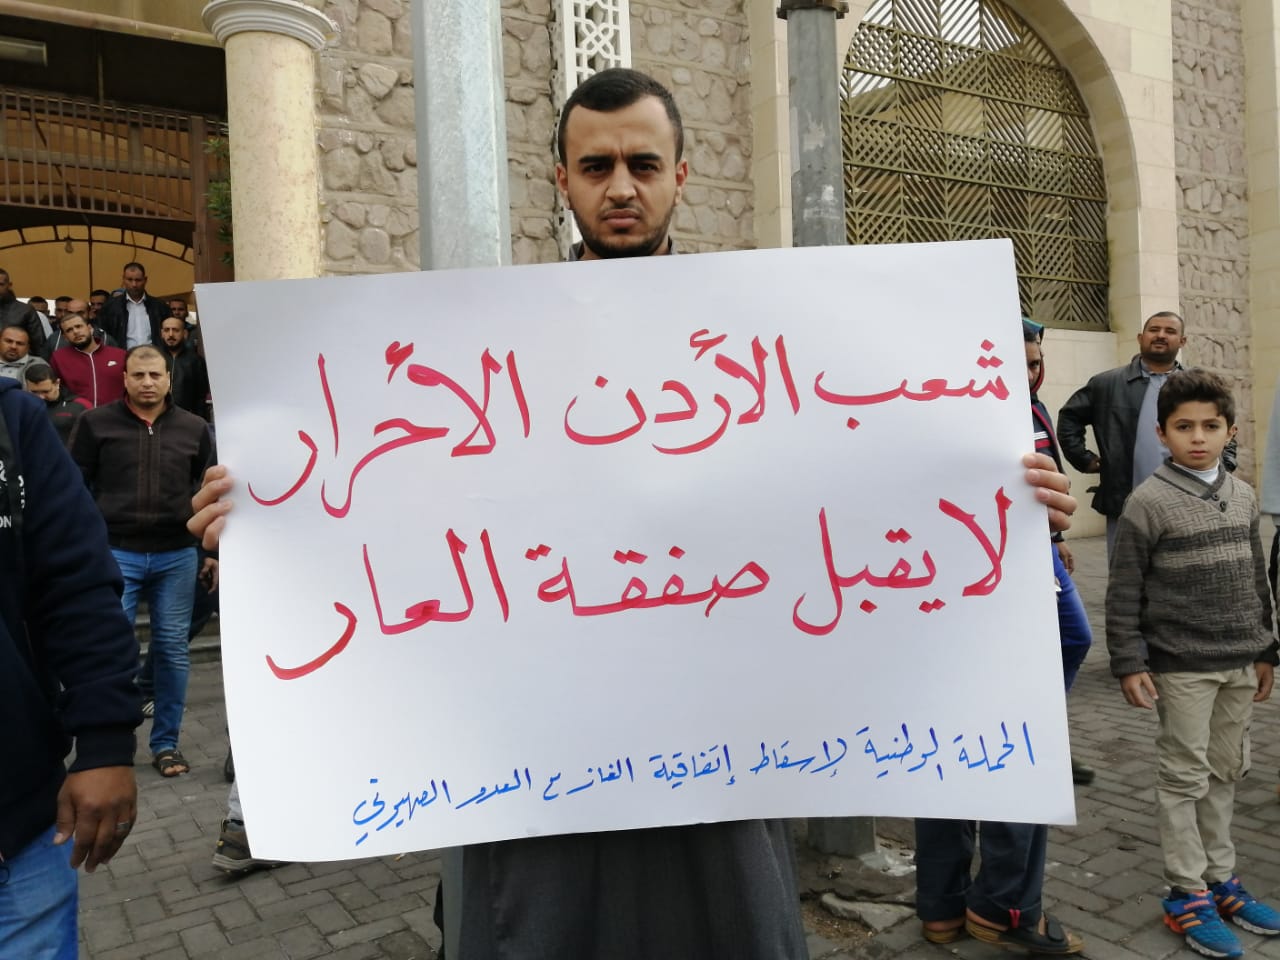 نائب أردني يكشف عن اتفافية حكومية لتزويد مستوطنات الاحتلال بالخضار